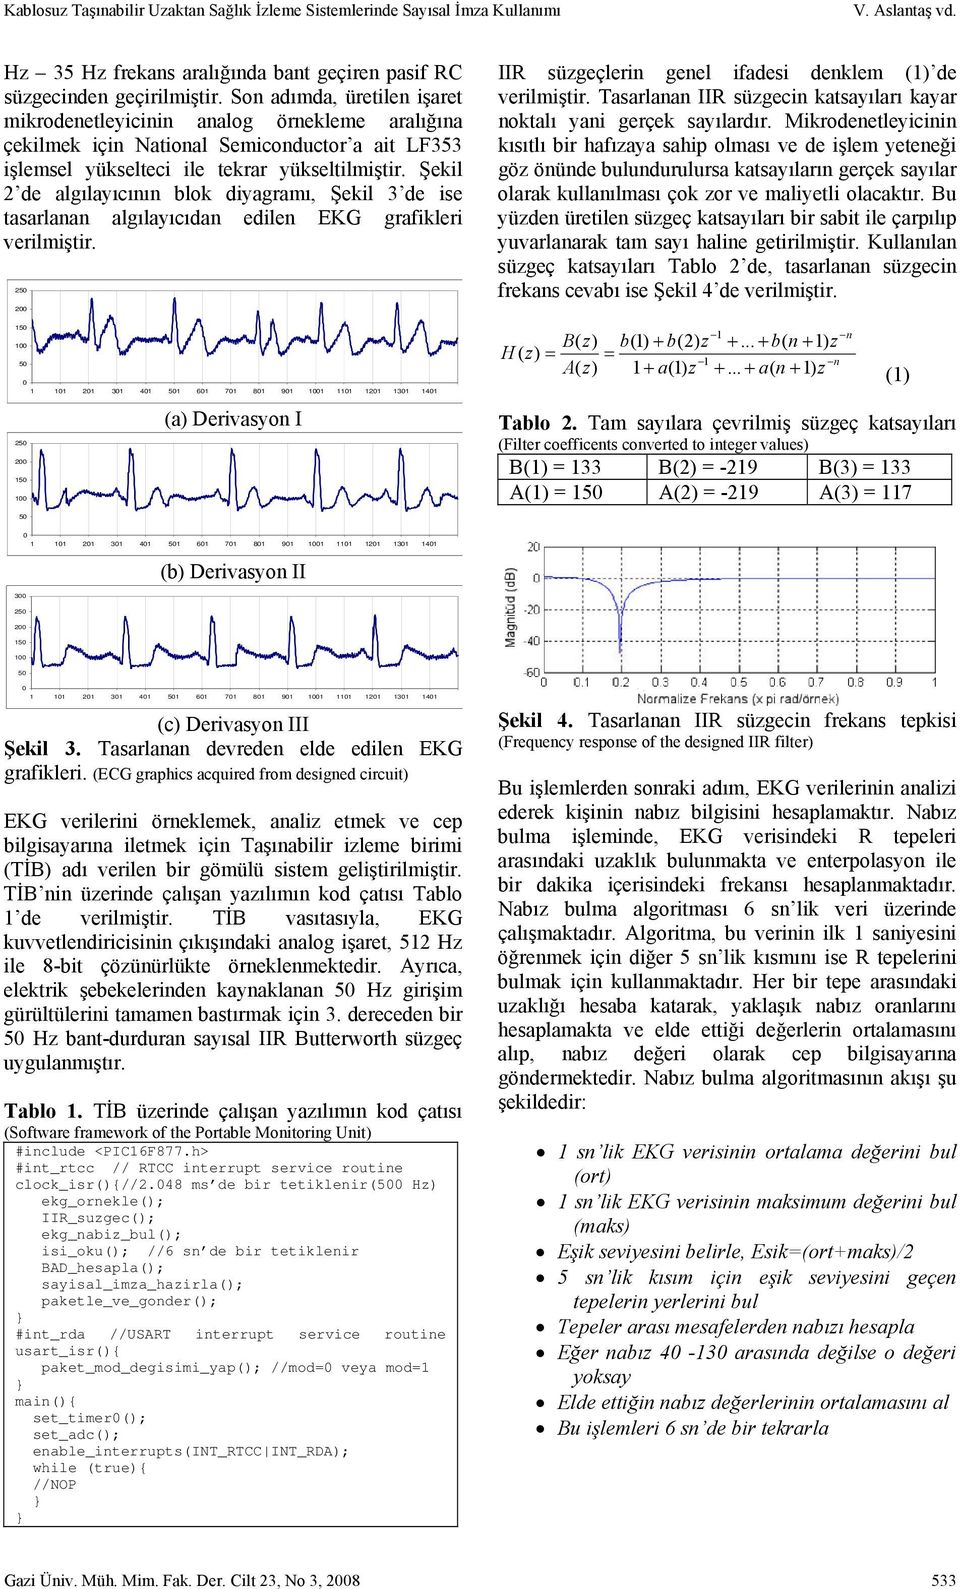 Şekil 2 de algılayıcının blok diyagramı, Şekil 3 de ise tasarlanan algılayıcıdan edilen EKG grafikleri verilmiştir.